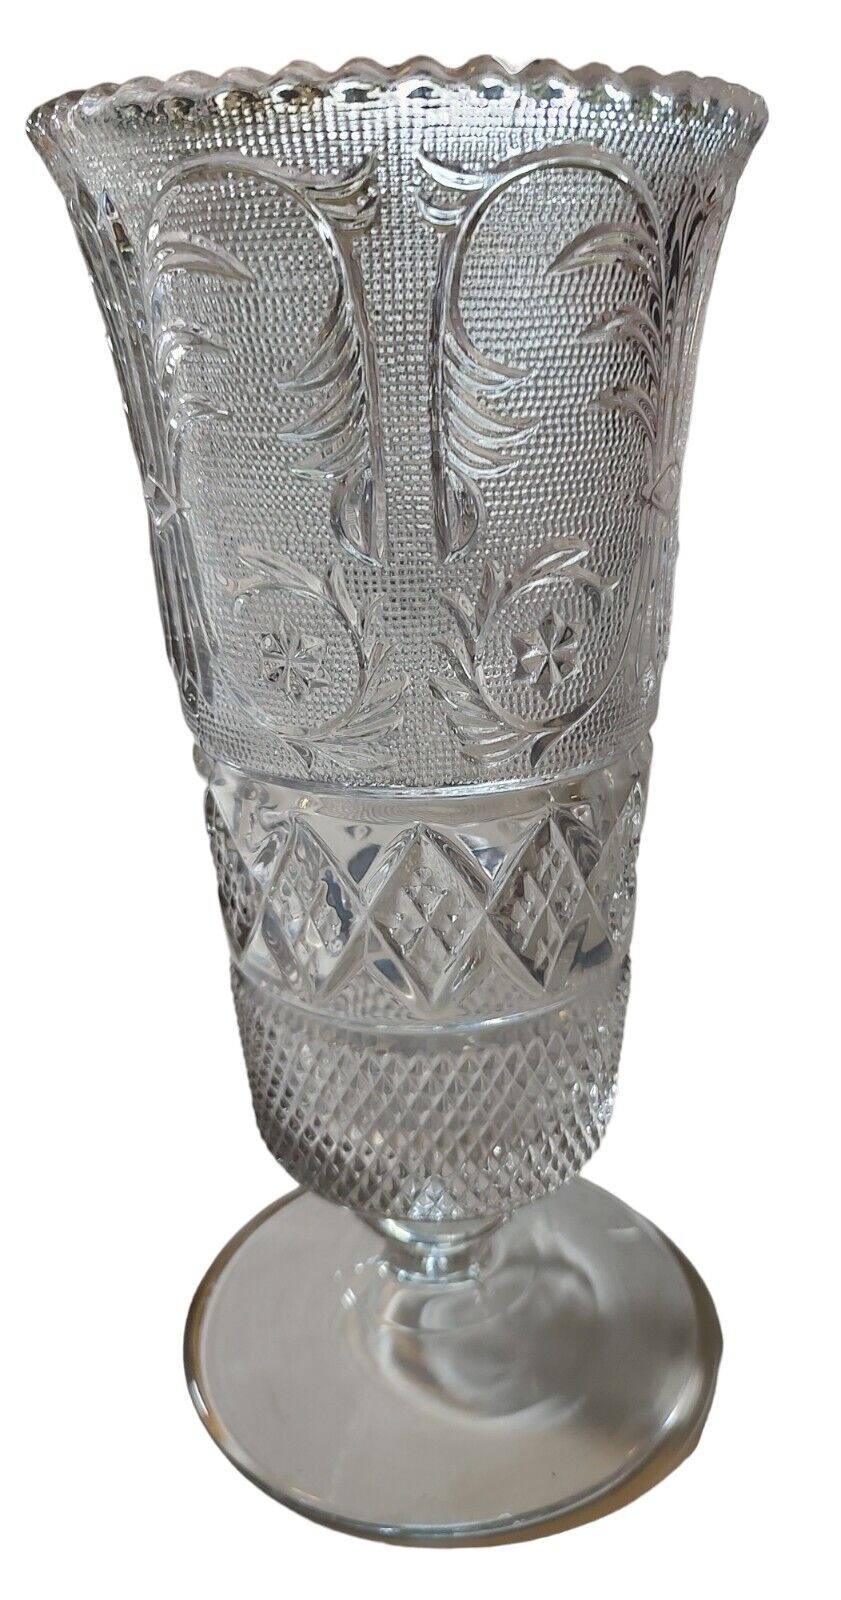 Duncan Miller Sandwich Glass Footed Pedestal Large 9.5 in Urn Vase Granny Core